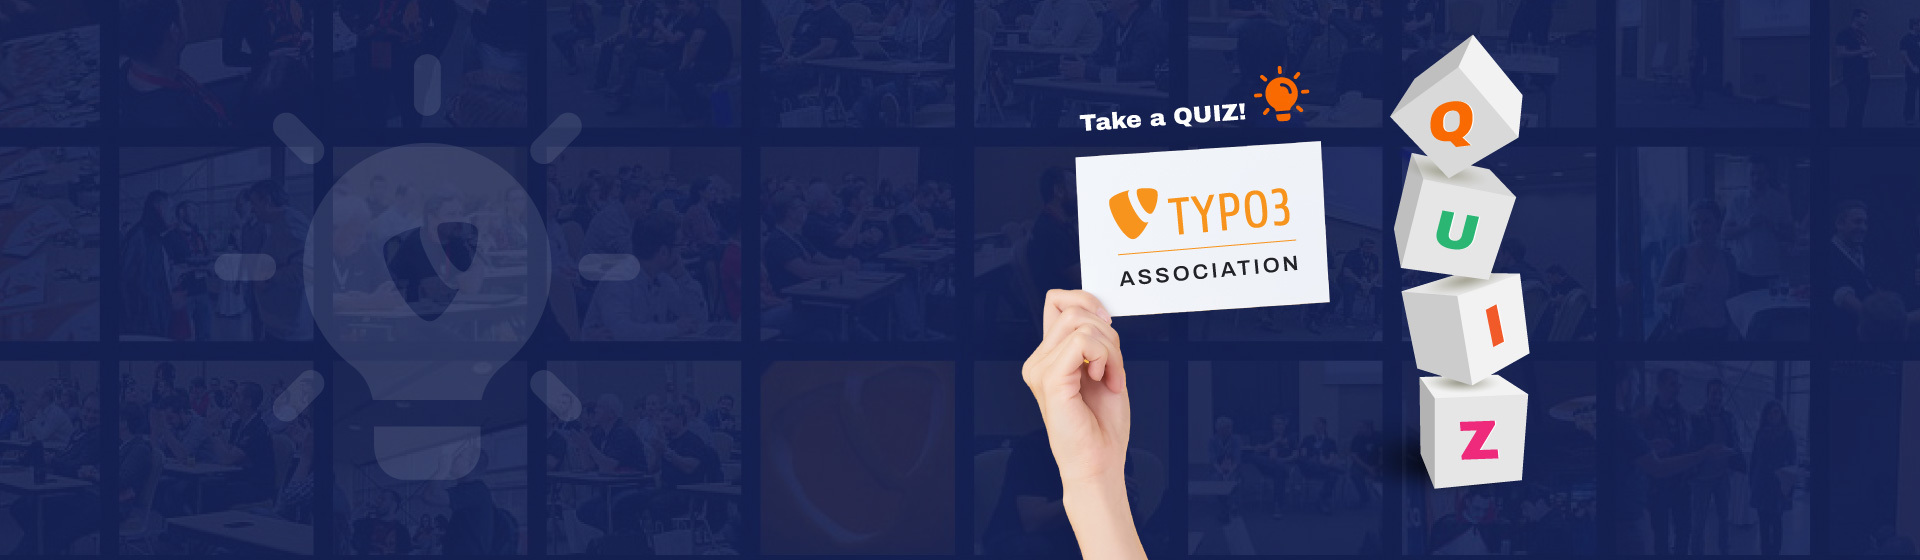 Wie gut kennen Sie sich mit TYPO3 Association aus?